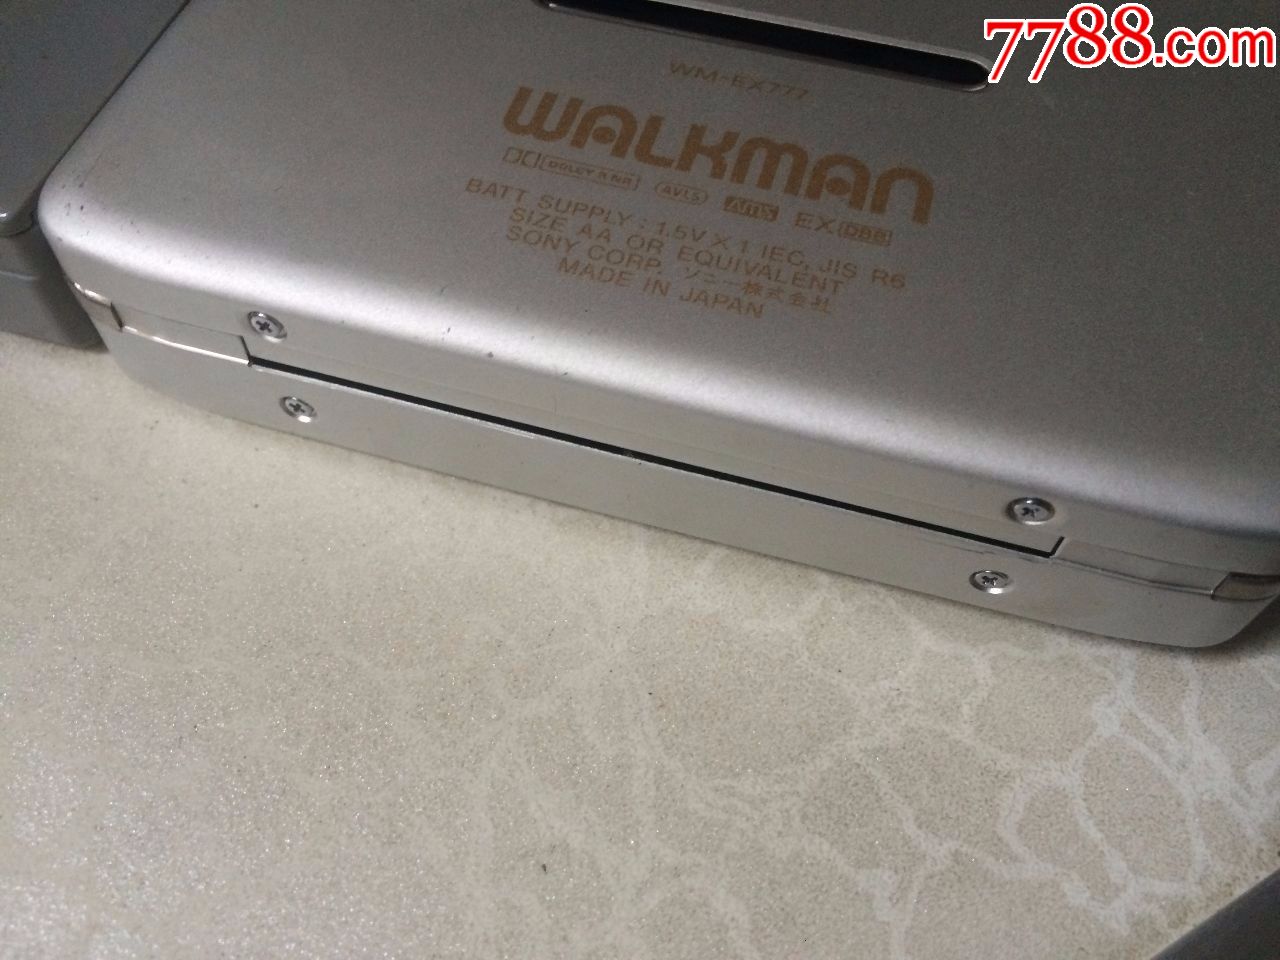 一台经典收藏wm-ex777sony索尼磁带随身听walkman磁带机_第9张